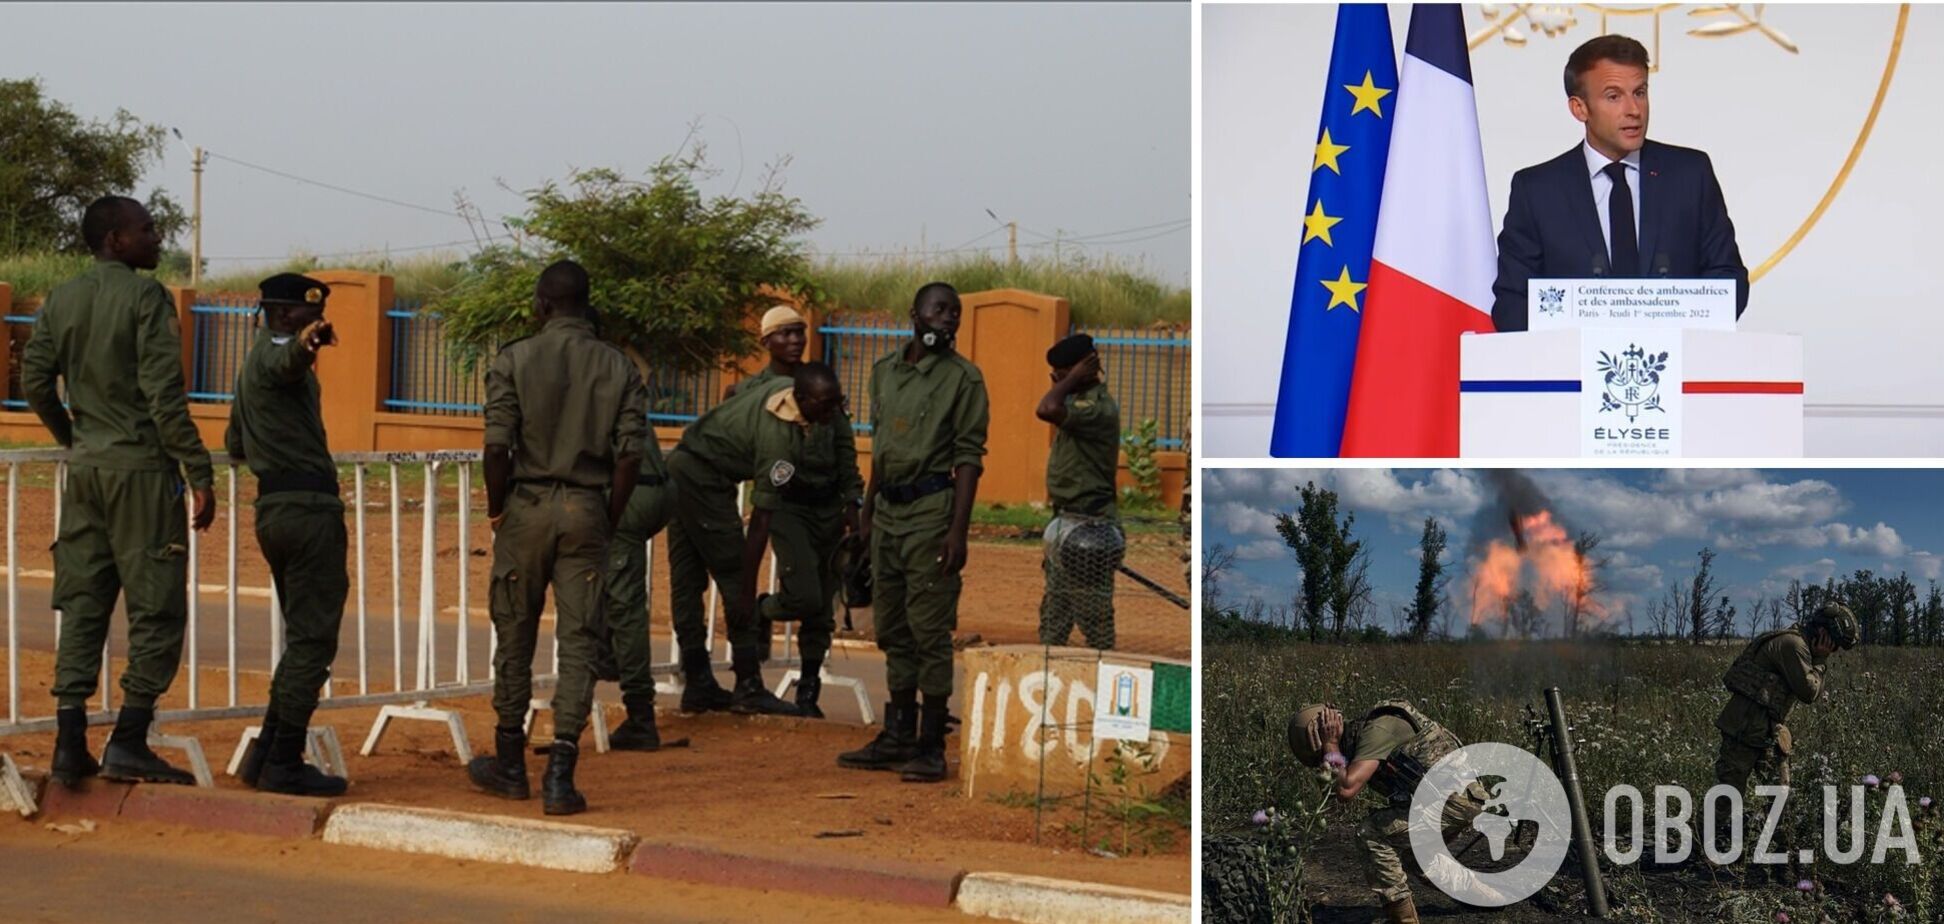 Франция готова к силовой операции в Нигере: воспользуется ли Макрон ликвидацией верхушки ЧВК 'Вагнер'